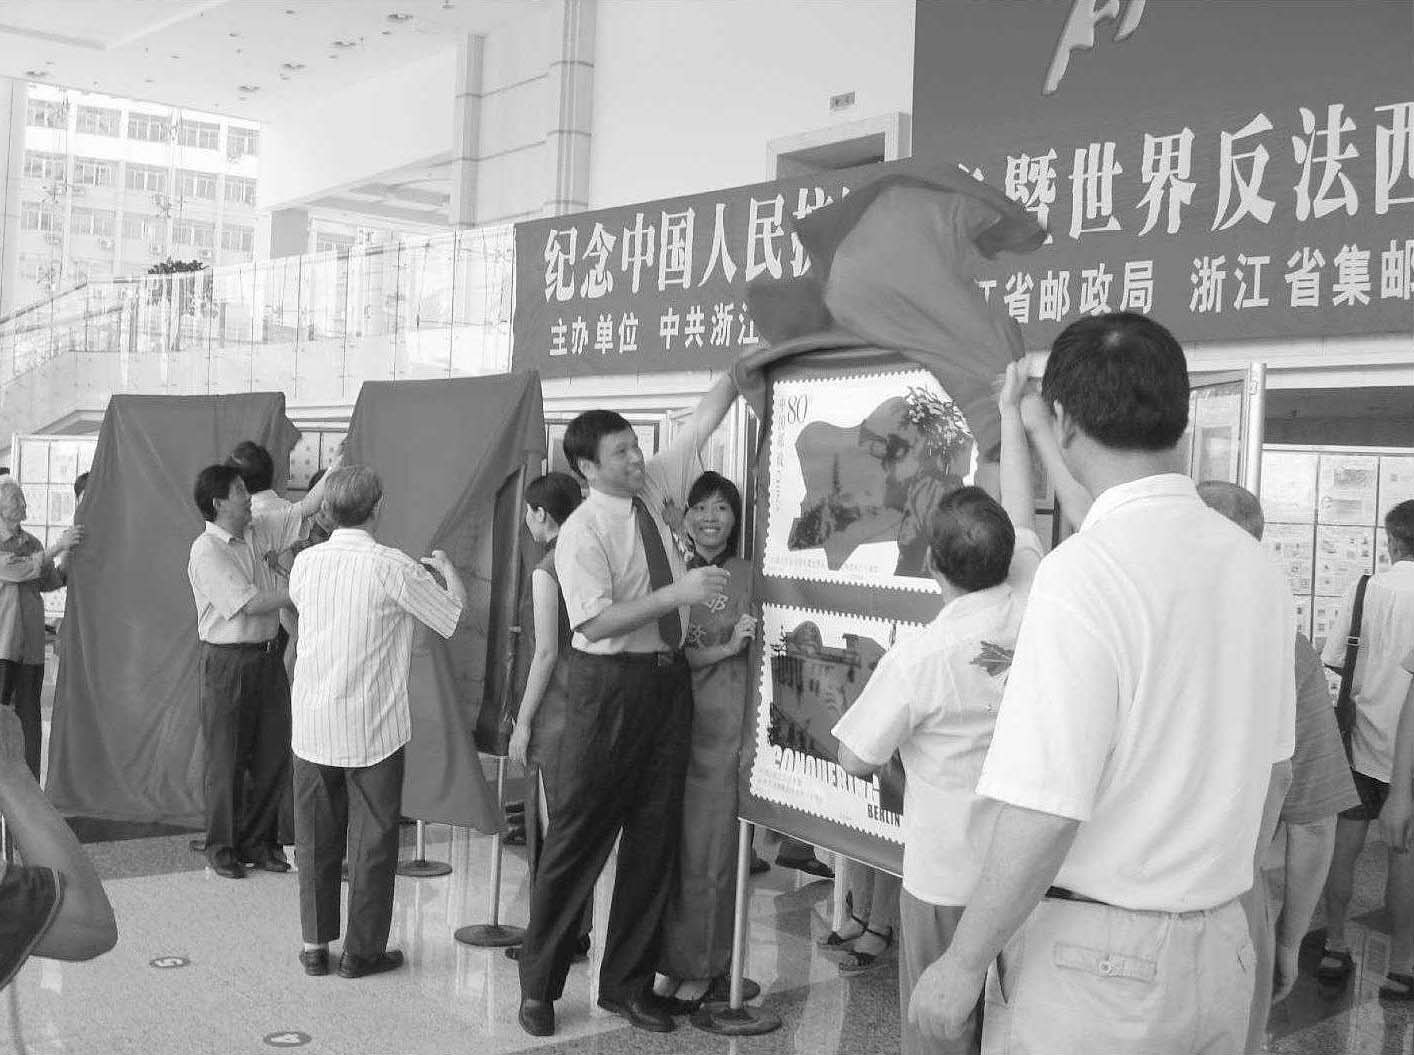 二、新中国改革开放后的集邮展览